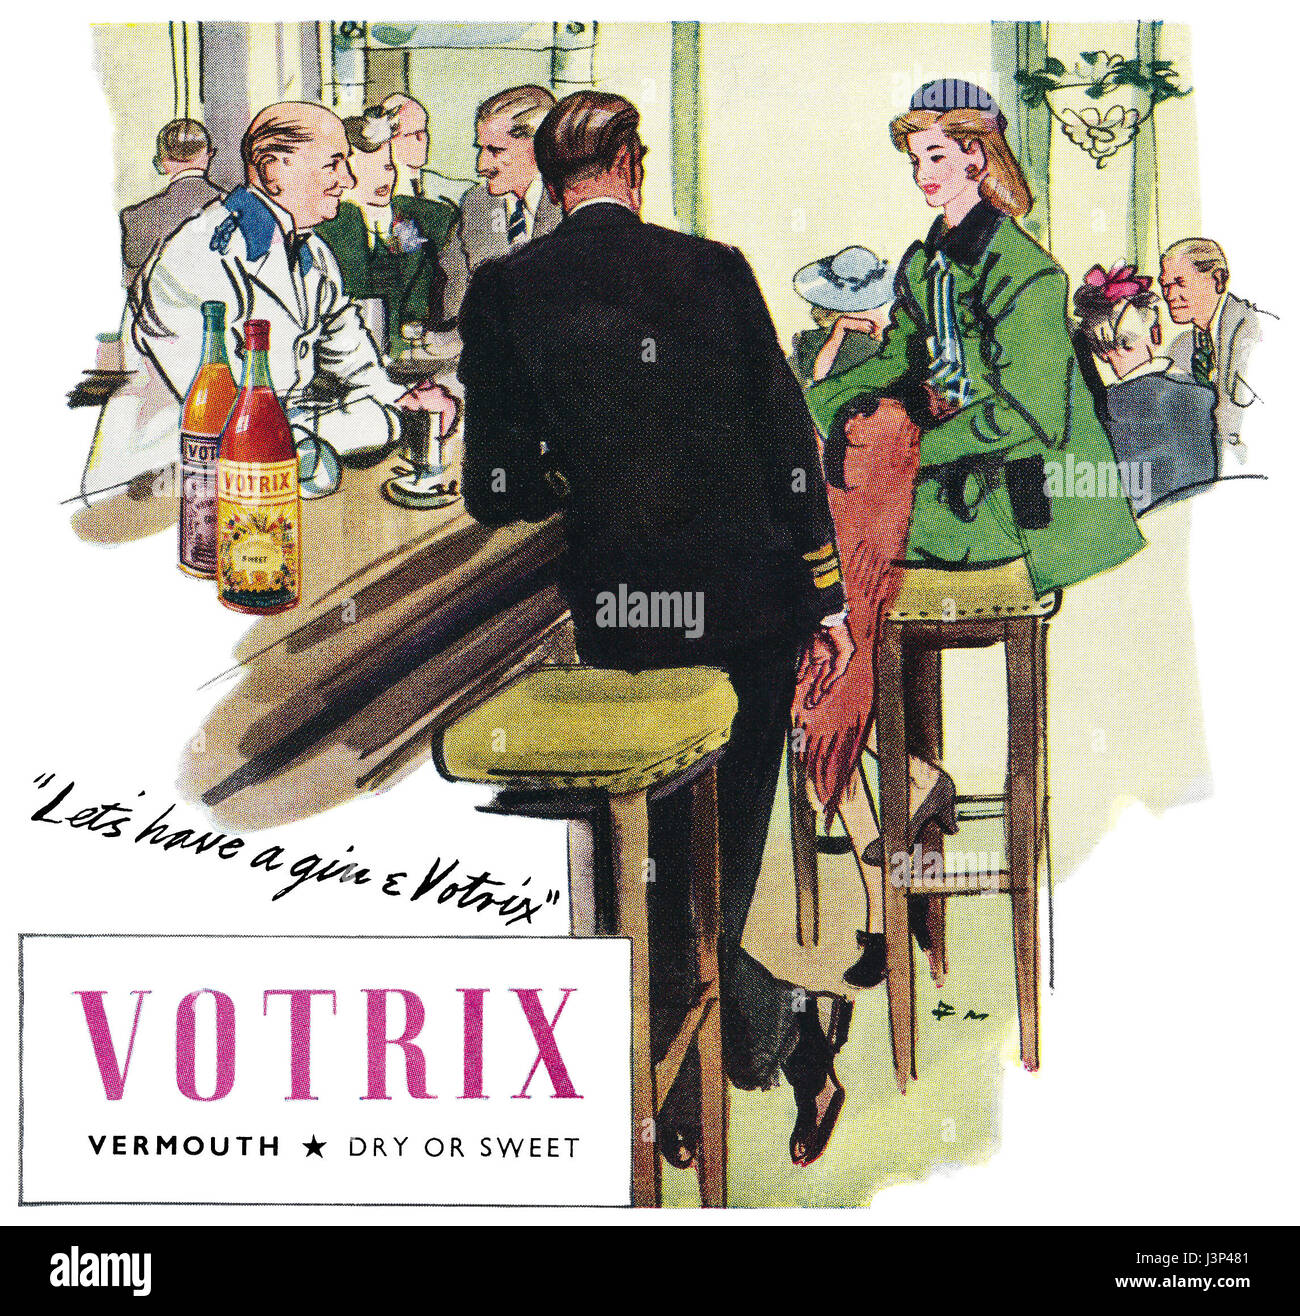 1946 British pubblicità per Votrix Vermouth, illustrato da Francis Marshall. Foto Stock